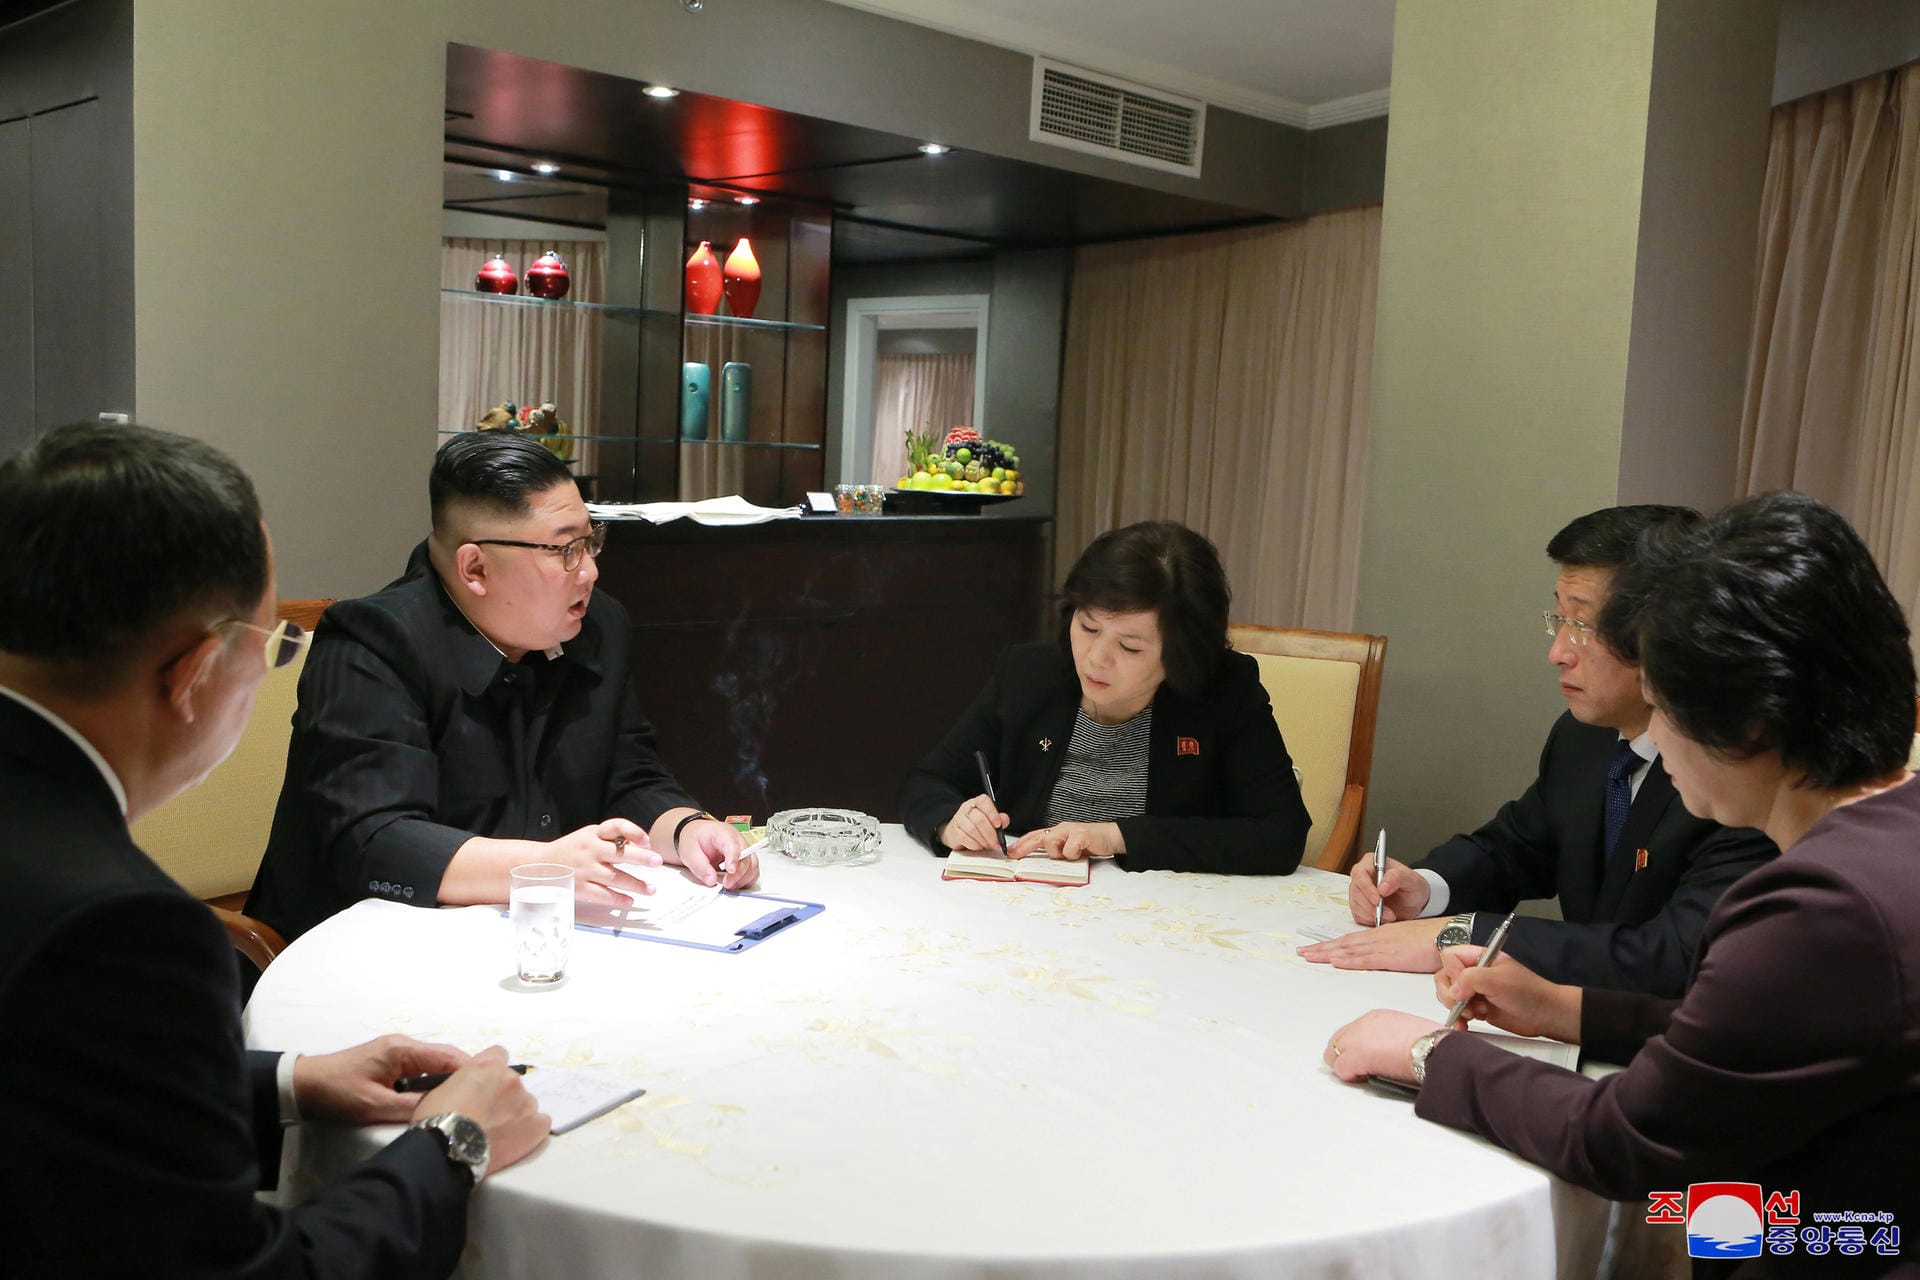 Kim Jong Un bei der Arbeit: Die von der staatlichen nordkoreanischen Nachrichtenagentur KCNA soll Kim bei einem Briefing in seinem Hotel in Hanoi zeigen.